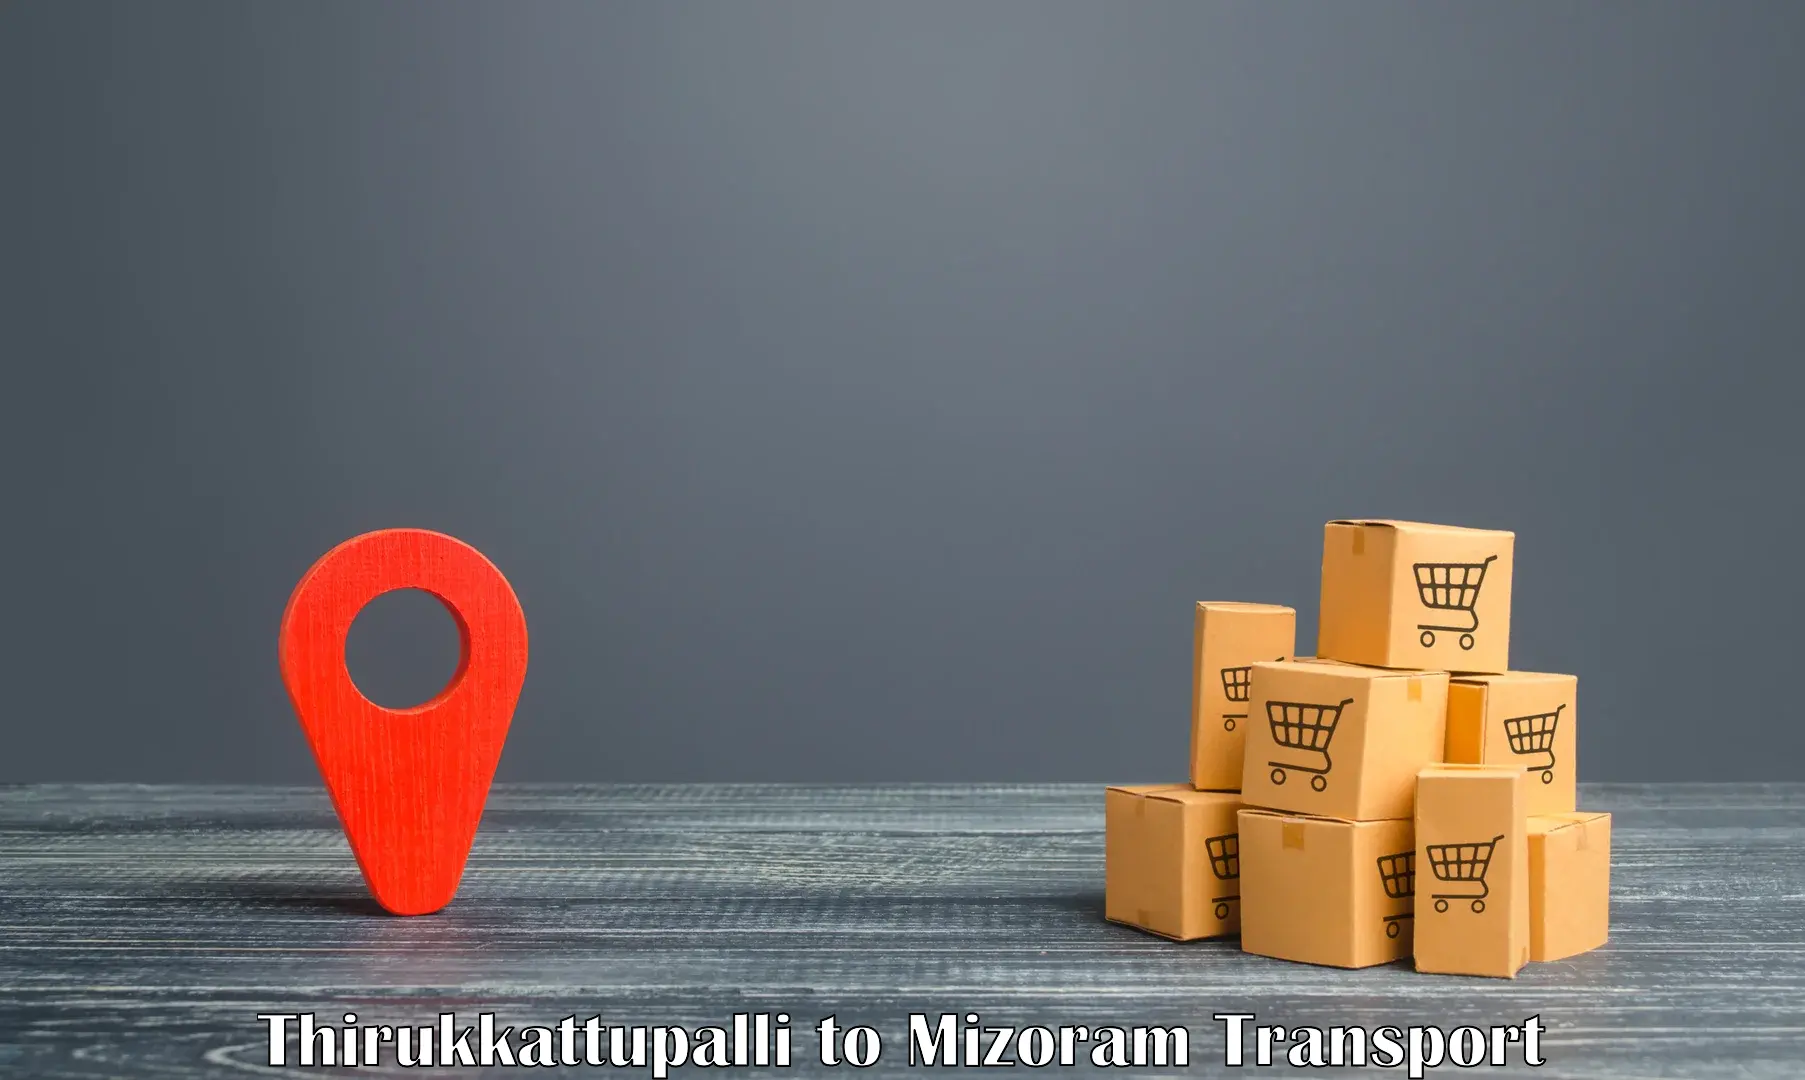 Cargo transport services Thirukkattupalli to Kolasib